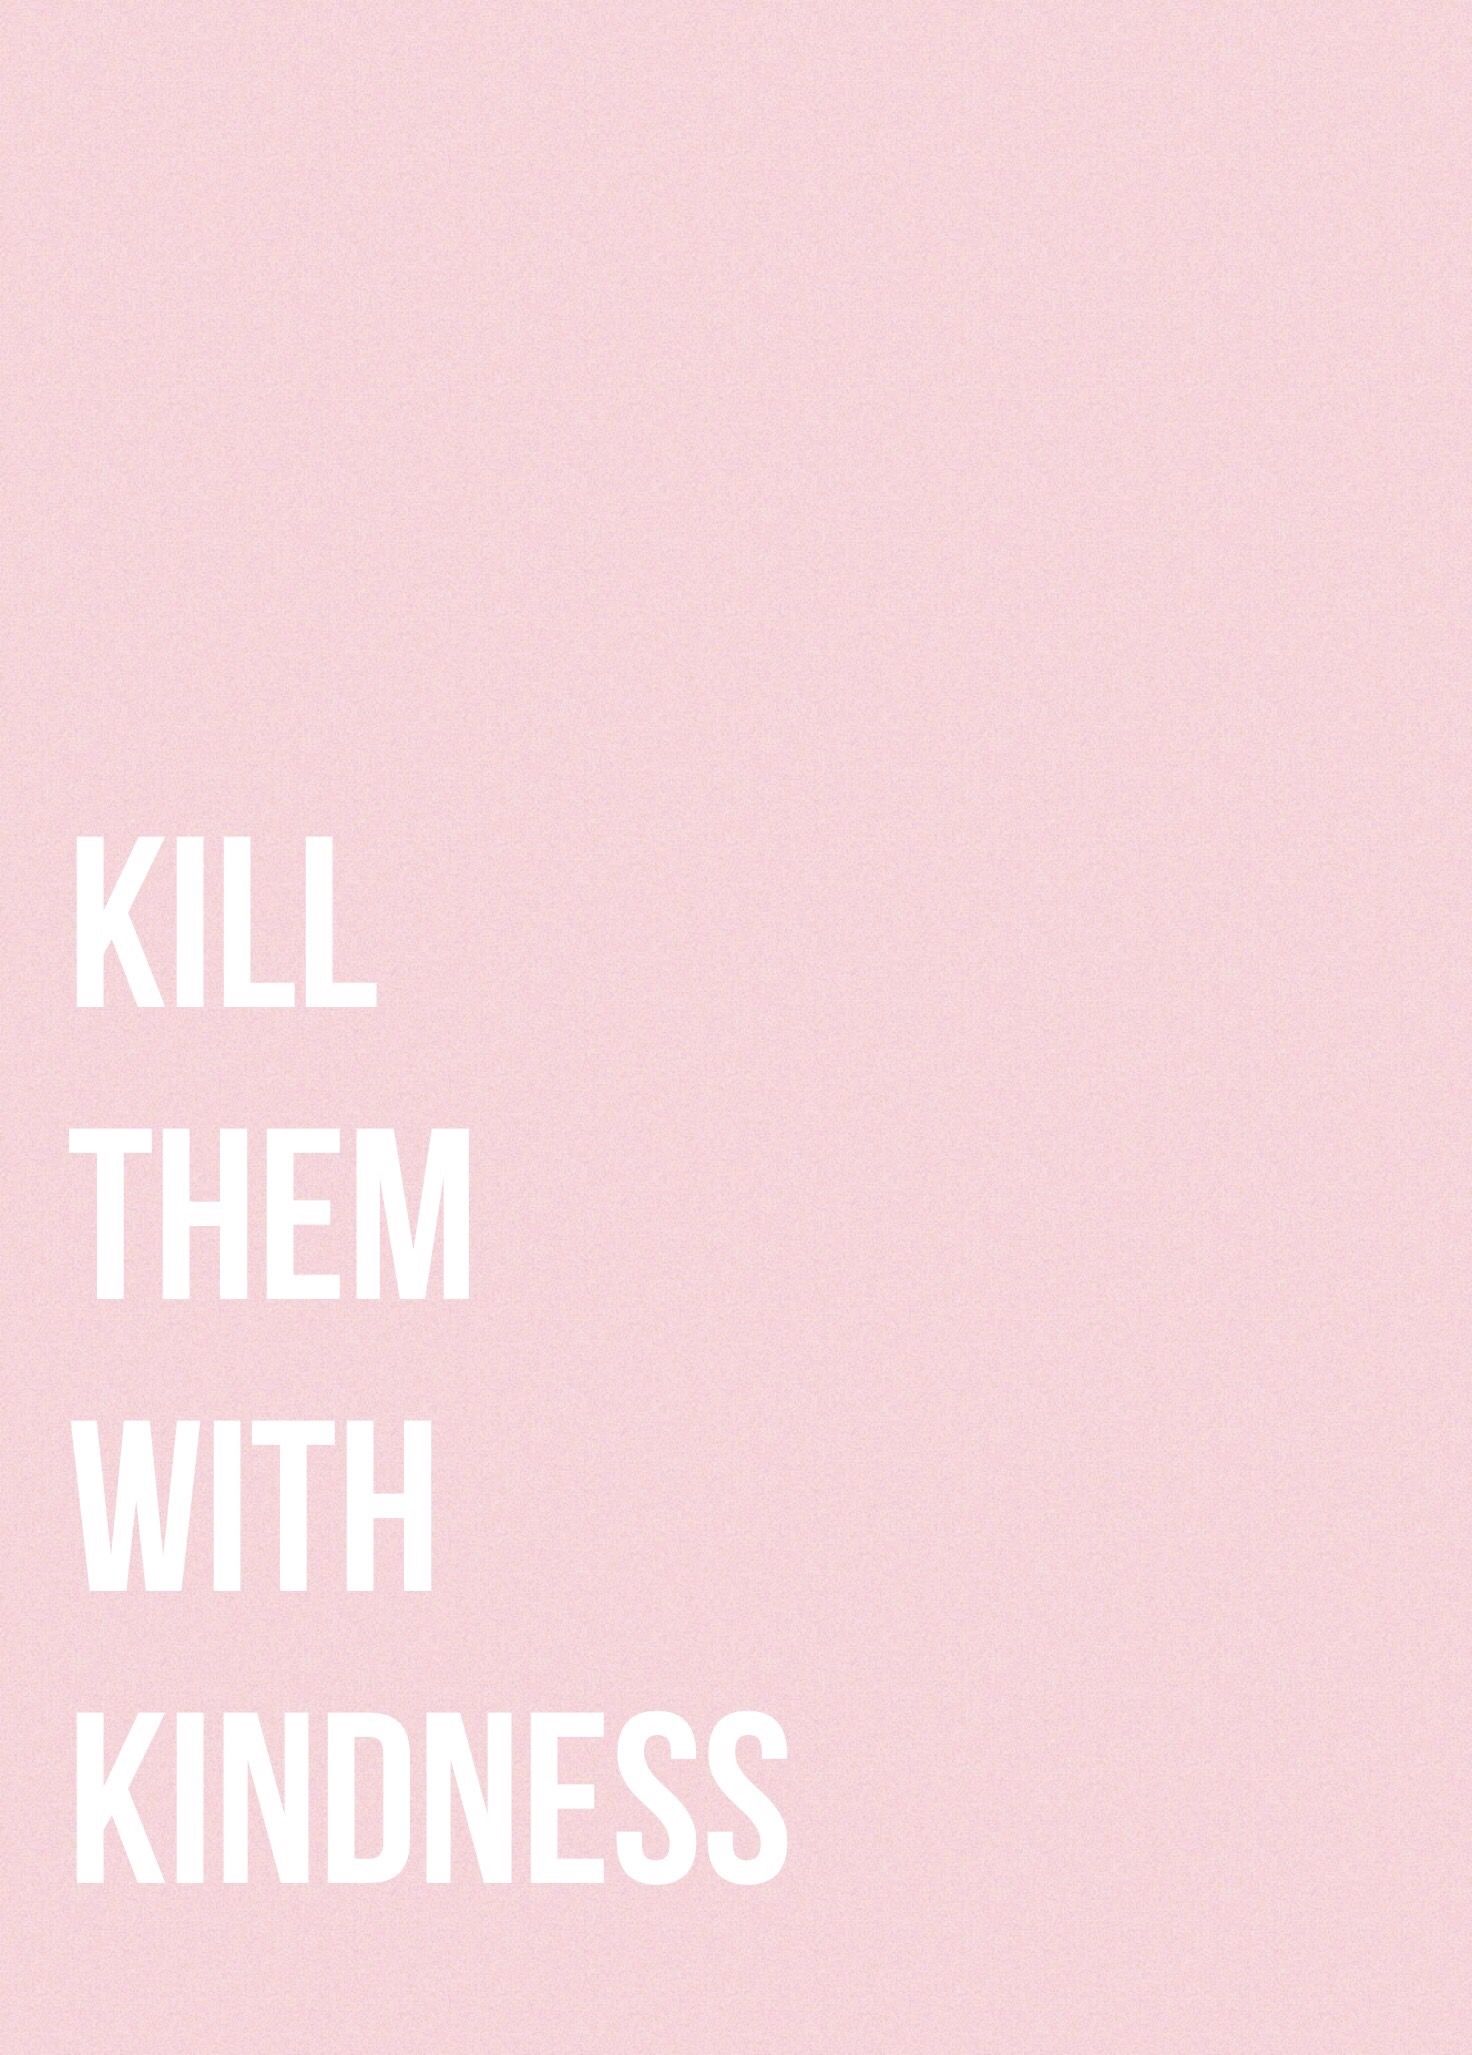 Kill Them With Kindness. iPhone Wallpaper. Planos de fundo, Pensamentos, Empoderamento